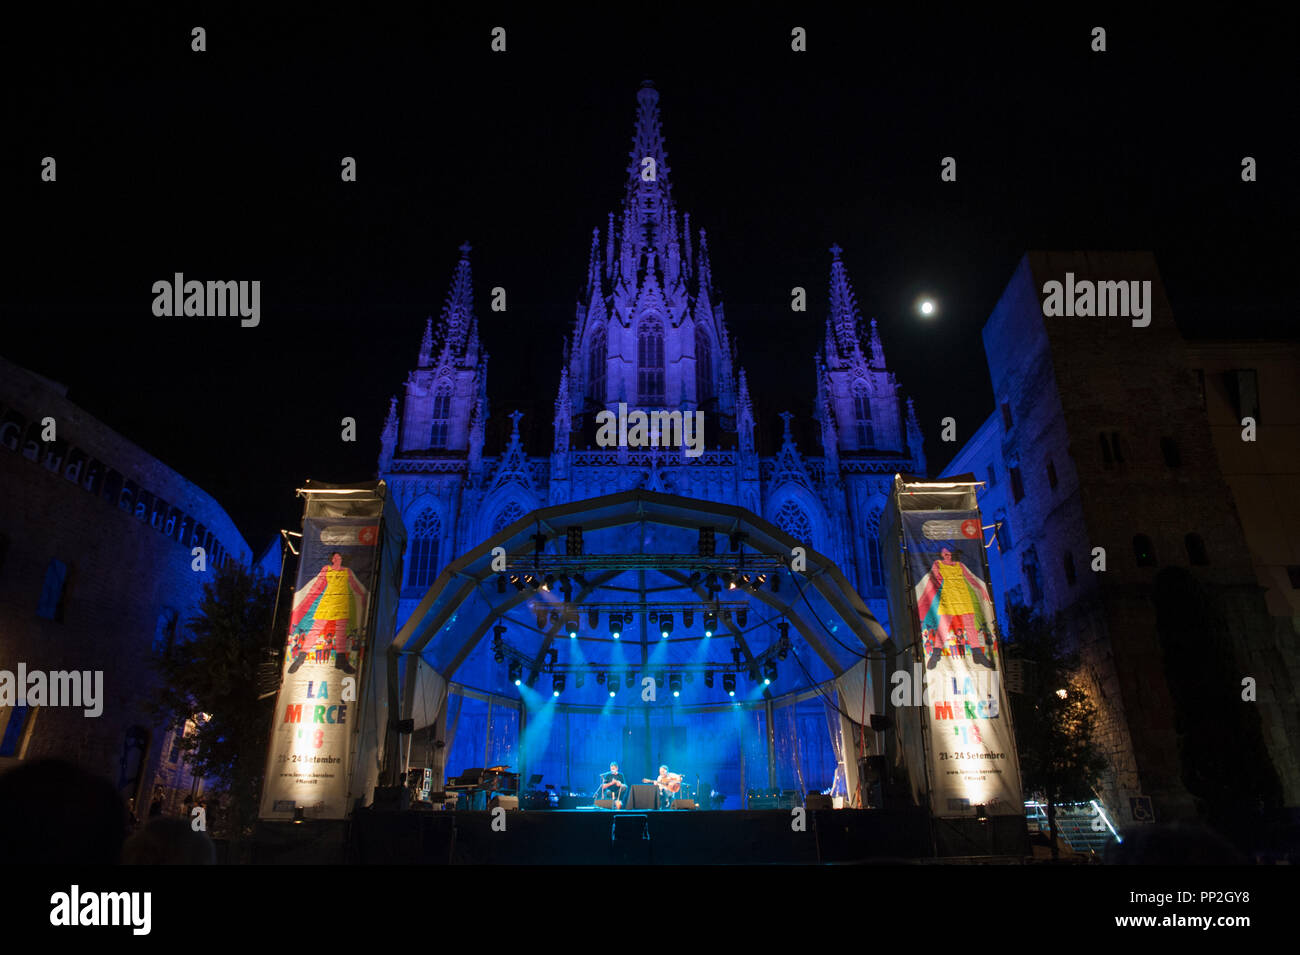 Barcelona, 22. September 2018. Die Kathedrale von Barcelona ist mit Farben gefärbt und liegt in einem schönen Szenario für die Konzerte, die dort gehalten werden. Stockfoto